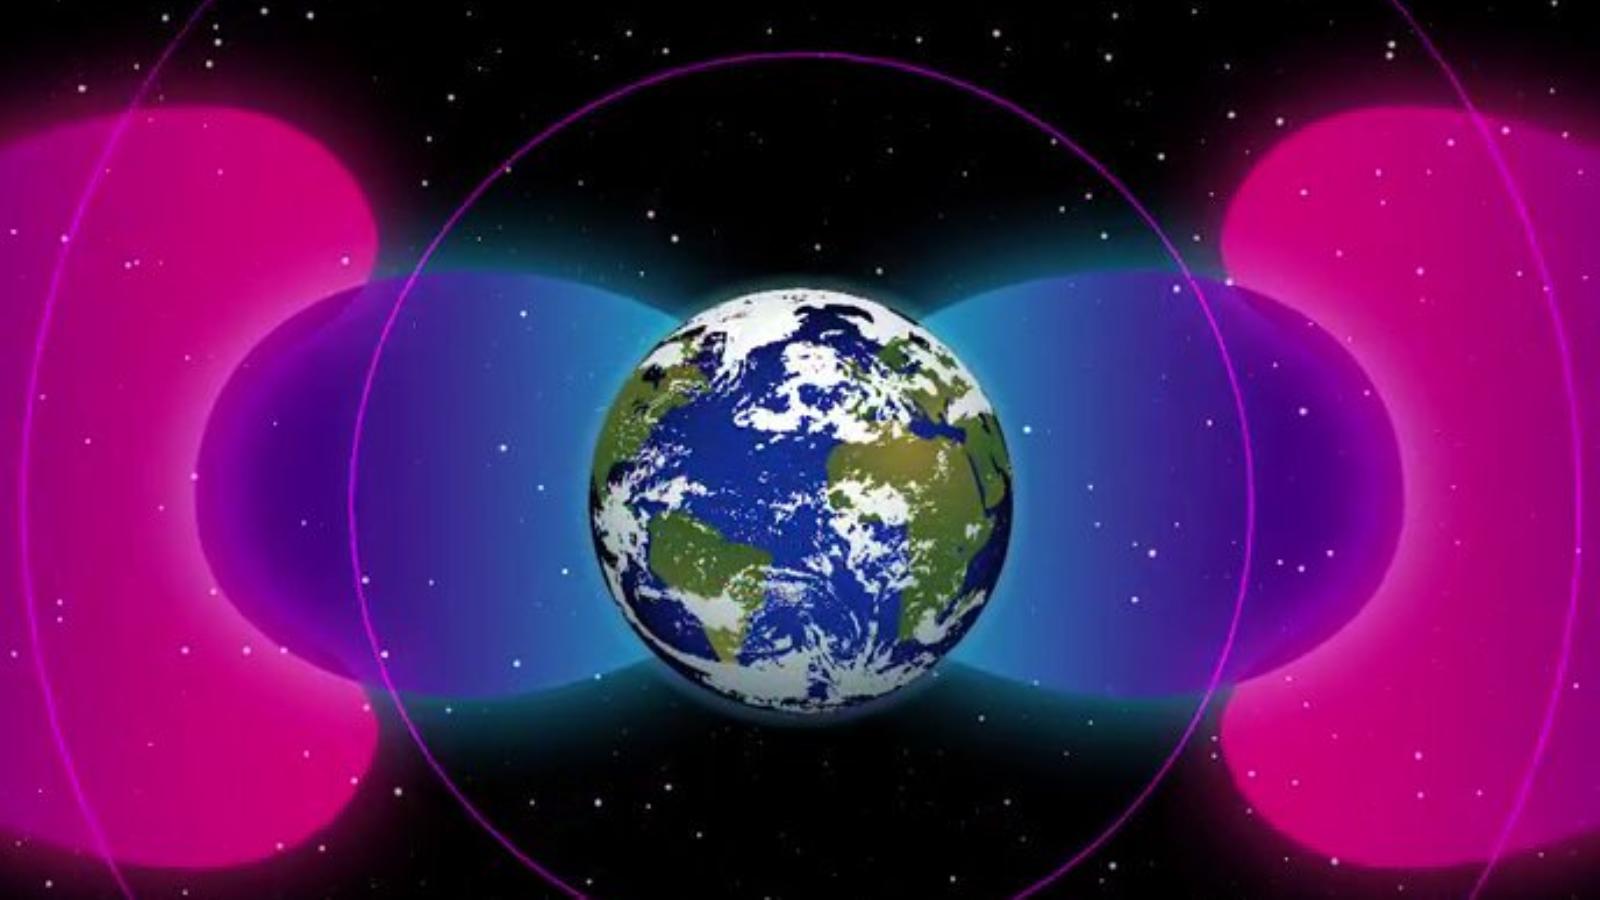 НАСА: люди создали вокруг Земли радиококон из сверхдлинных волн, защищающий от космической радиации - 1